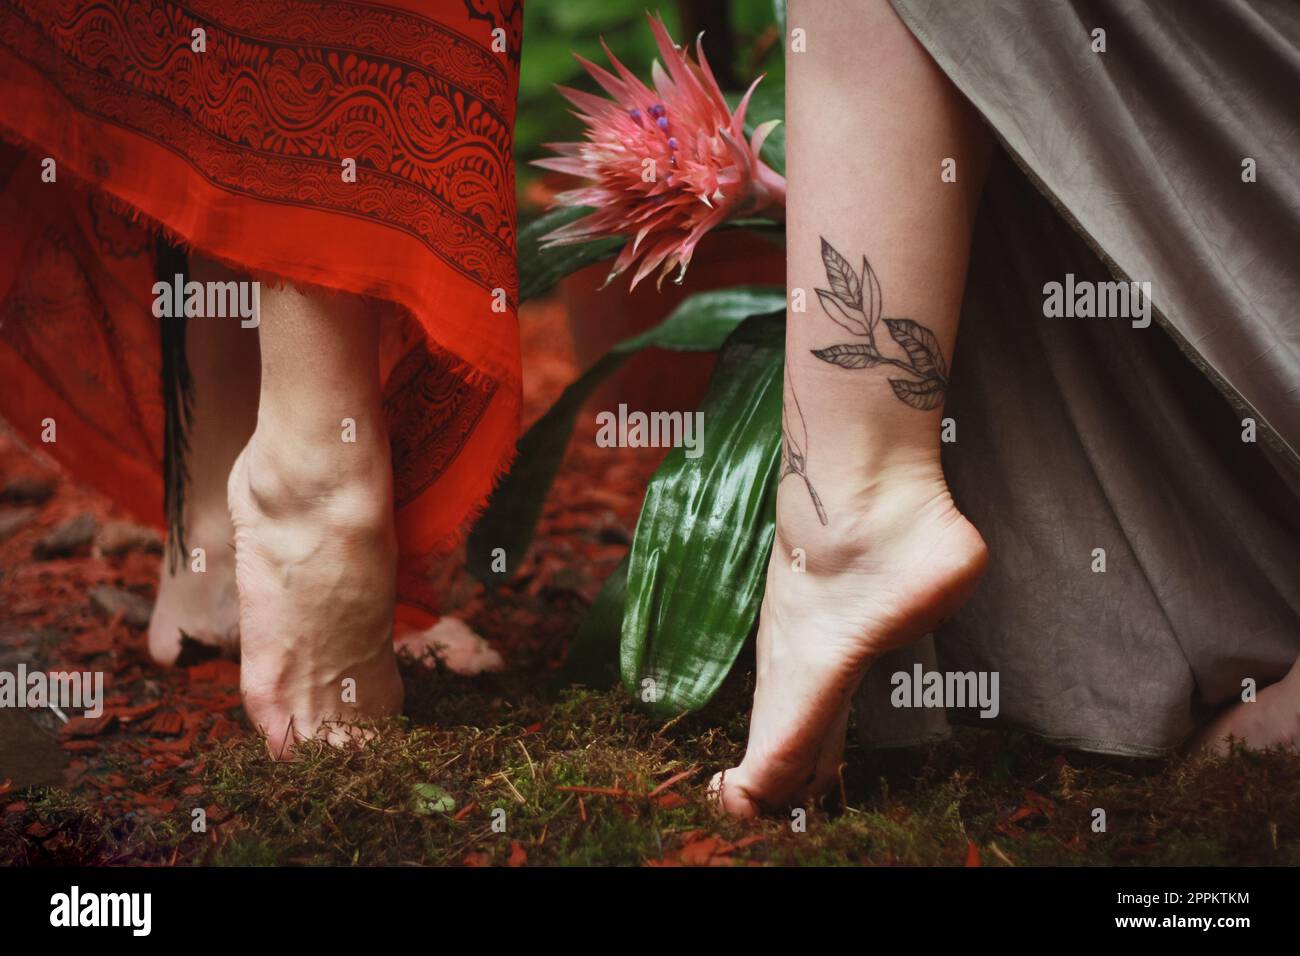 Gros plan des pieds femelles avec photo de concept de tatouage Banque D'Images